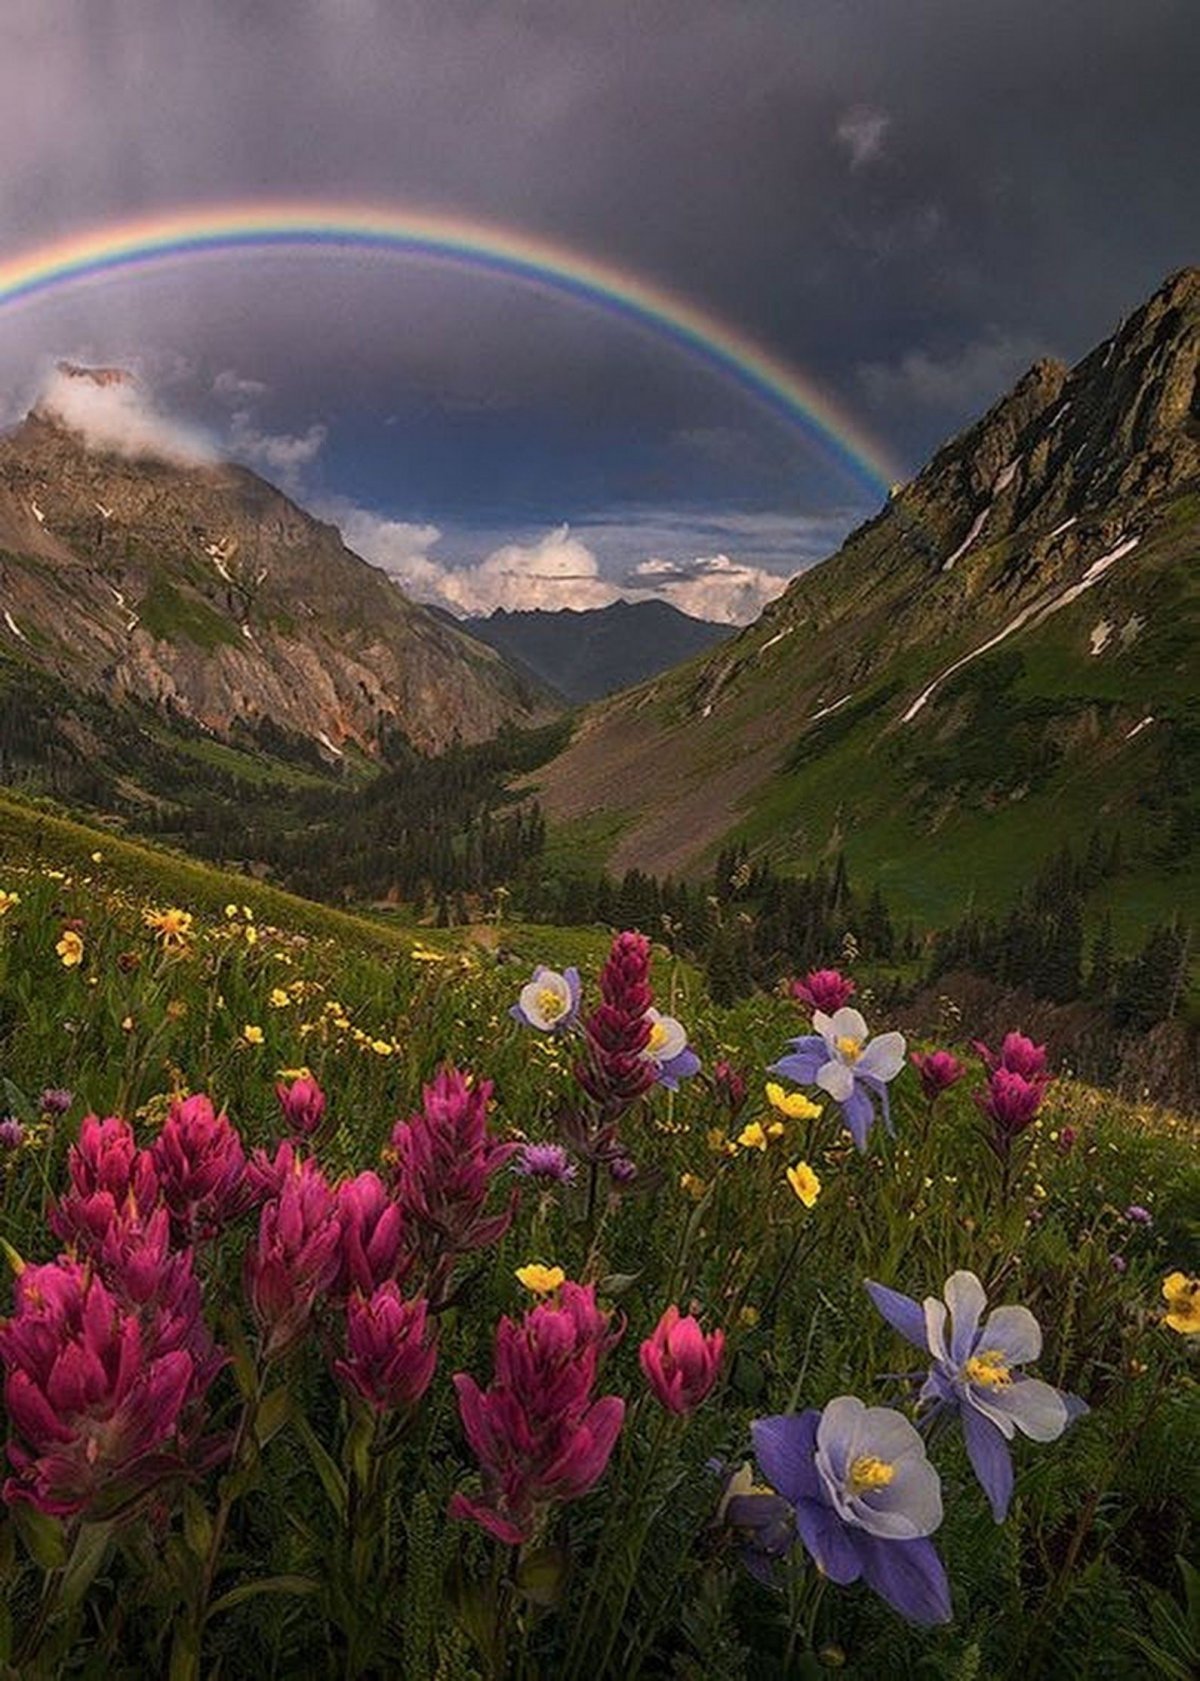 Божественно красивая картинка. Радуга в природе. Цветы в горах. Прекрасный мир природы. Красивые пейзажи с цветами.